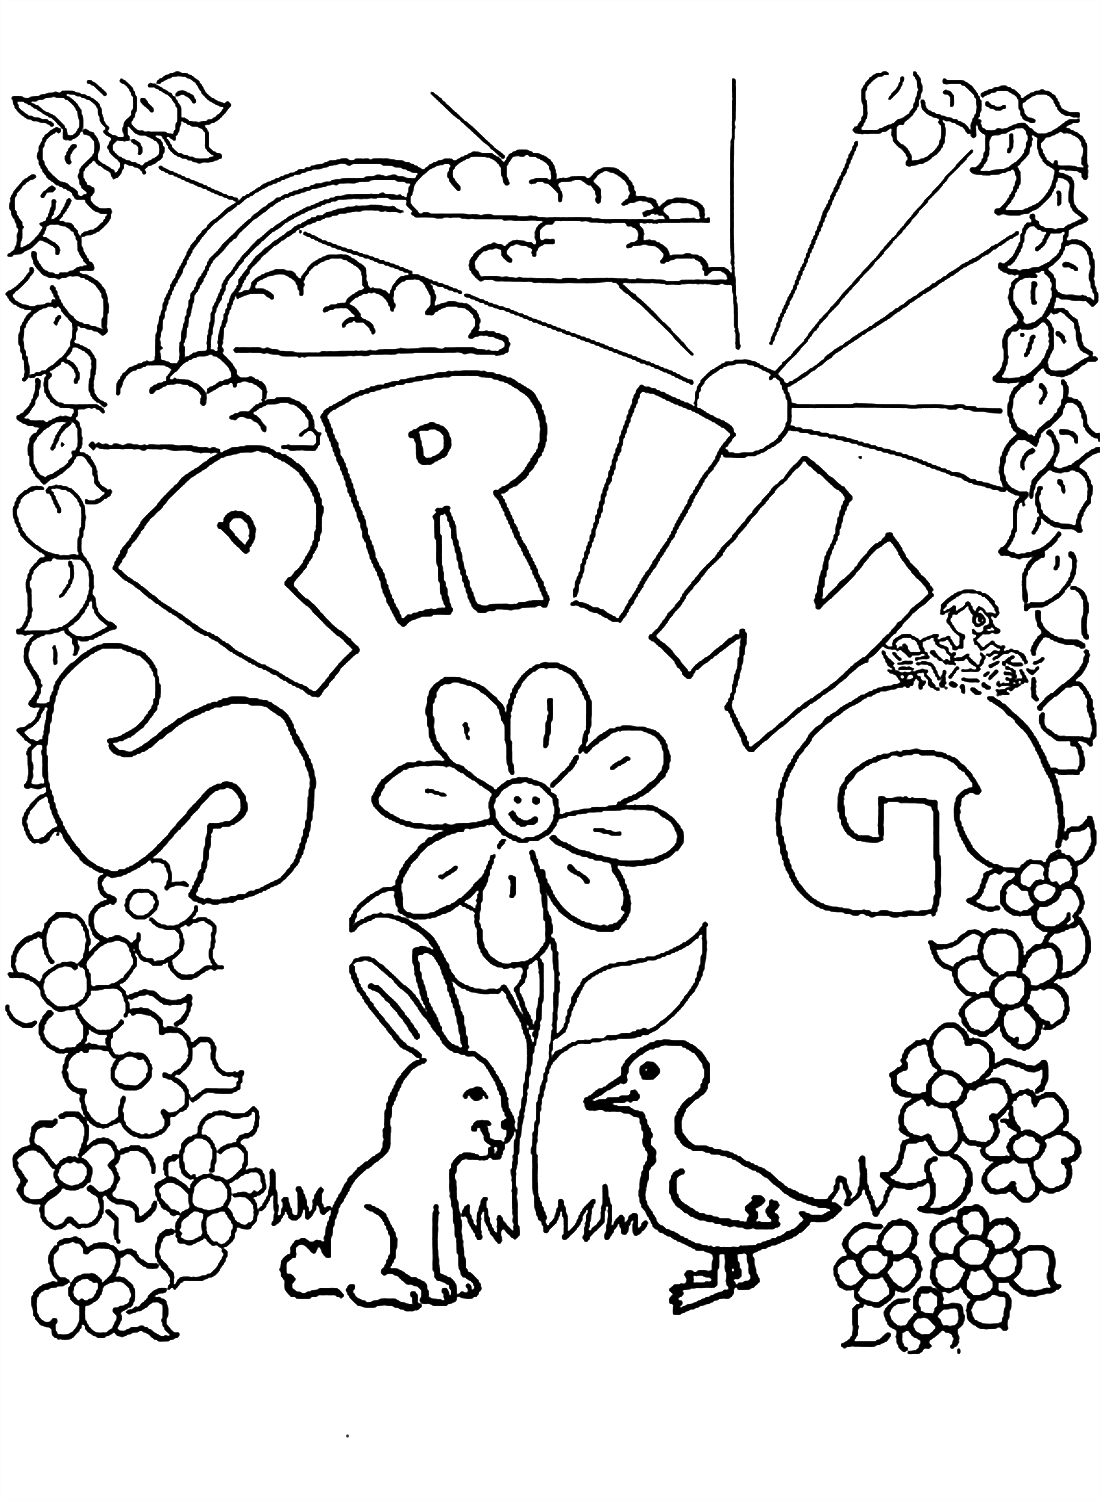 Página para colorir da estação da primavera